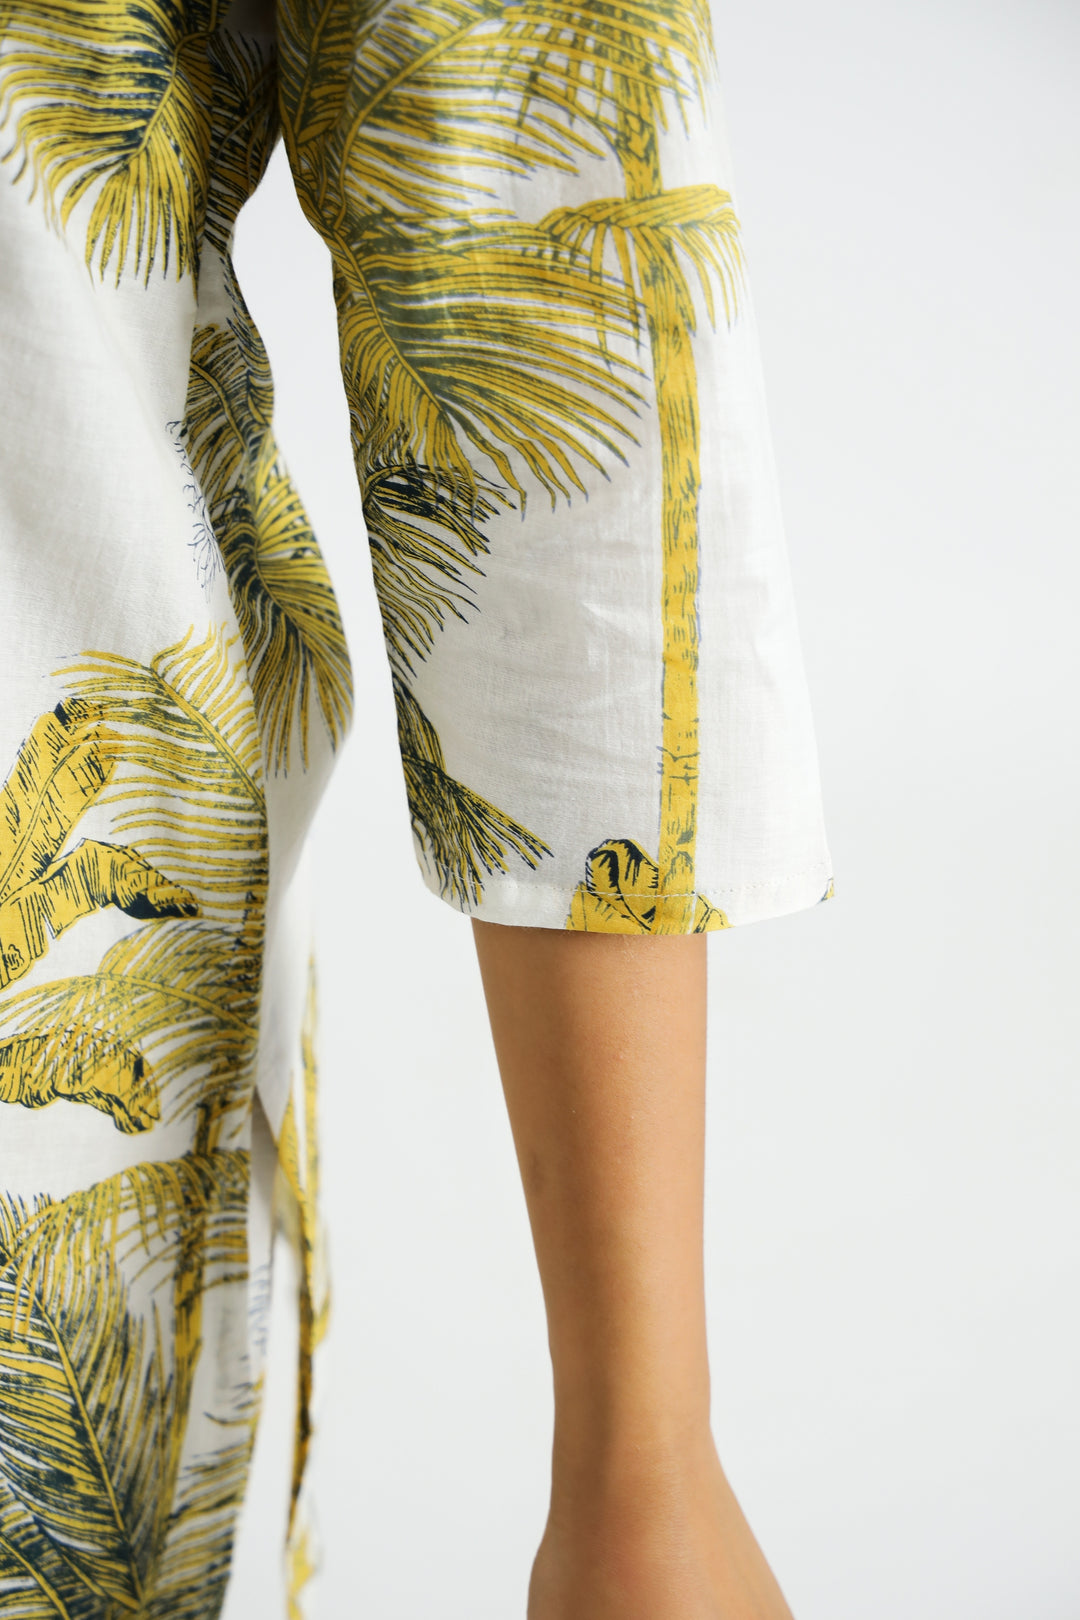 Yellow Palm Organic Printed Pure Cotton Loungewear Set